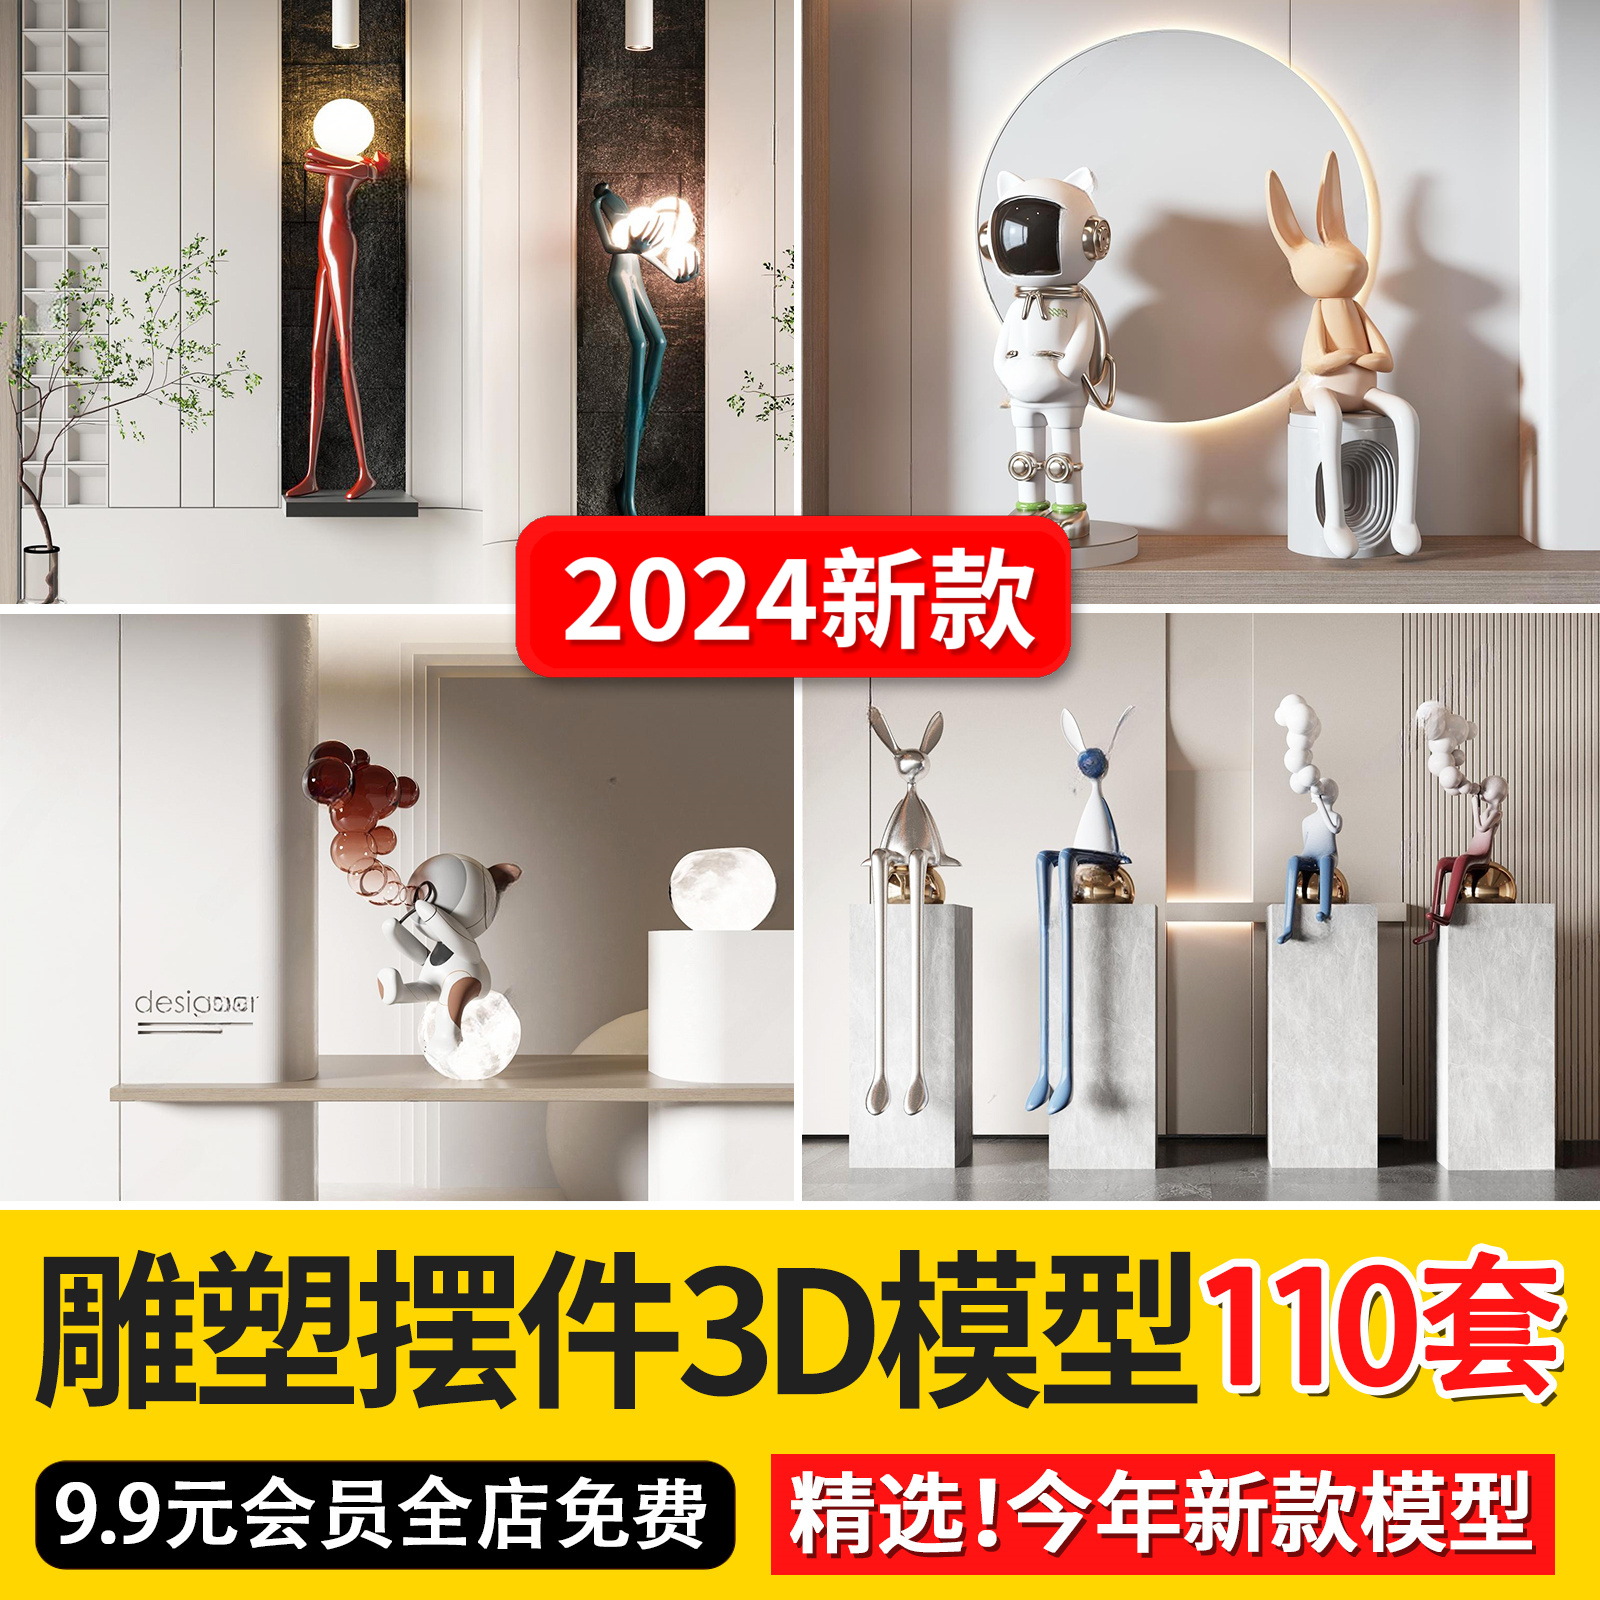 2024创意雕塑抽象装饰品人物摆件3dmax模型库灯具3d单体模型素材